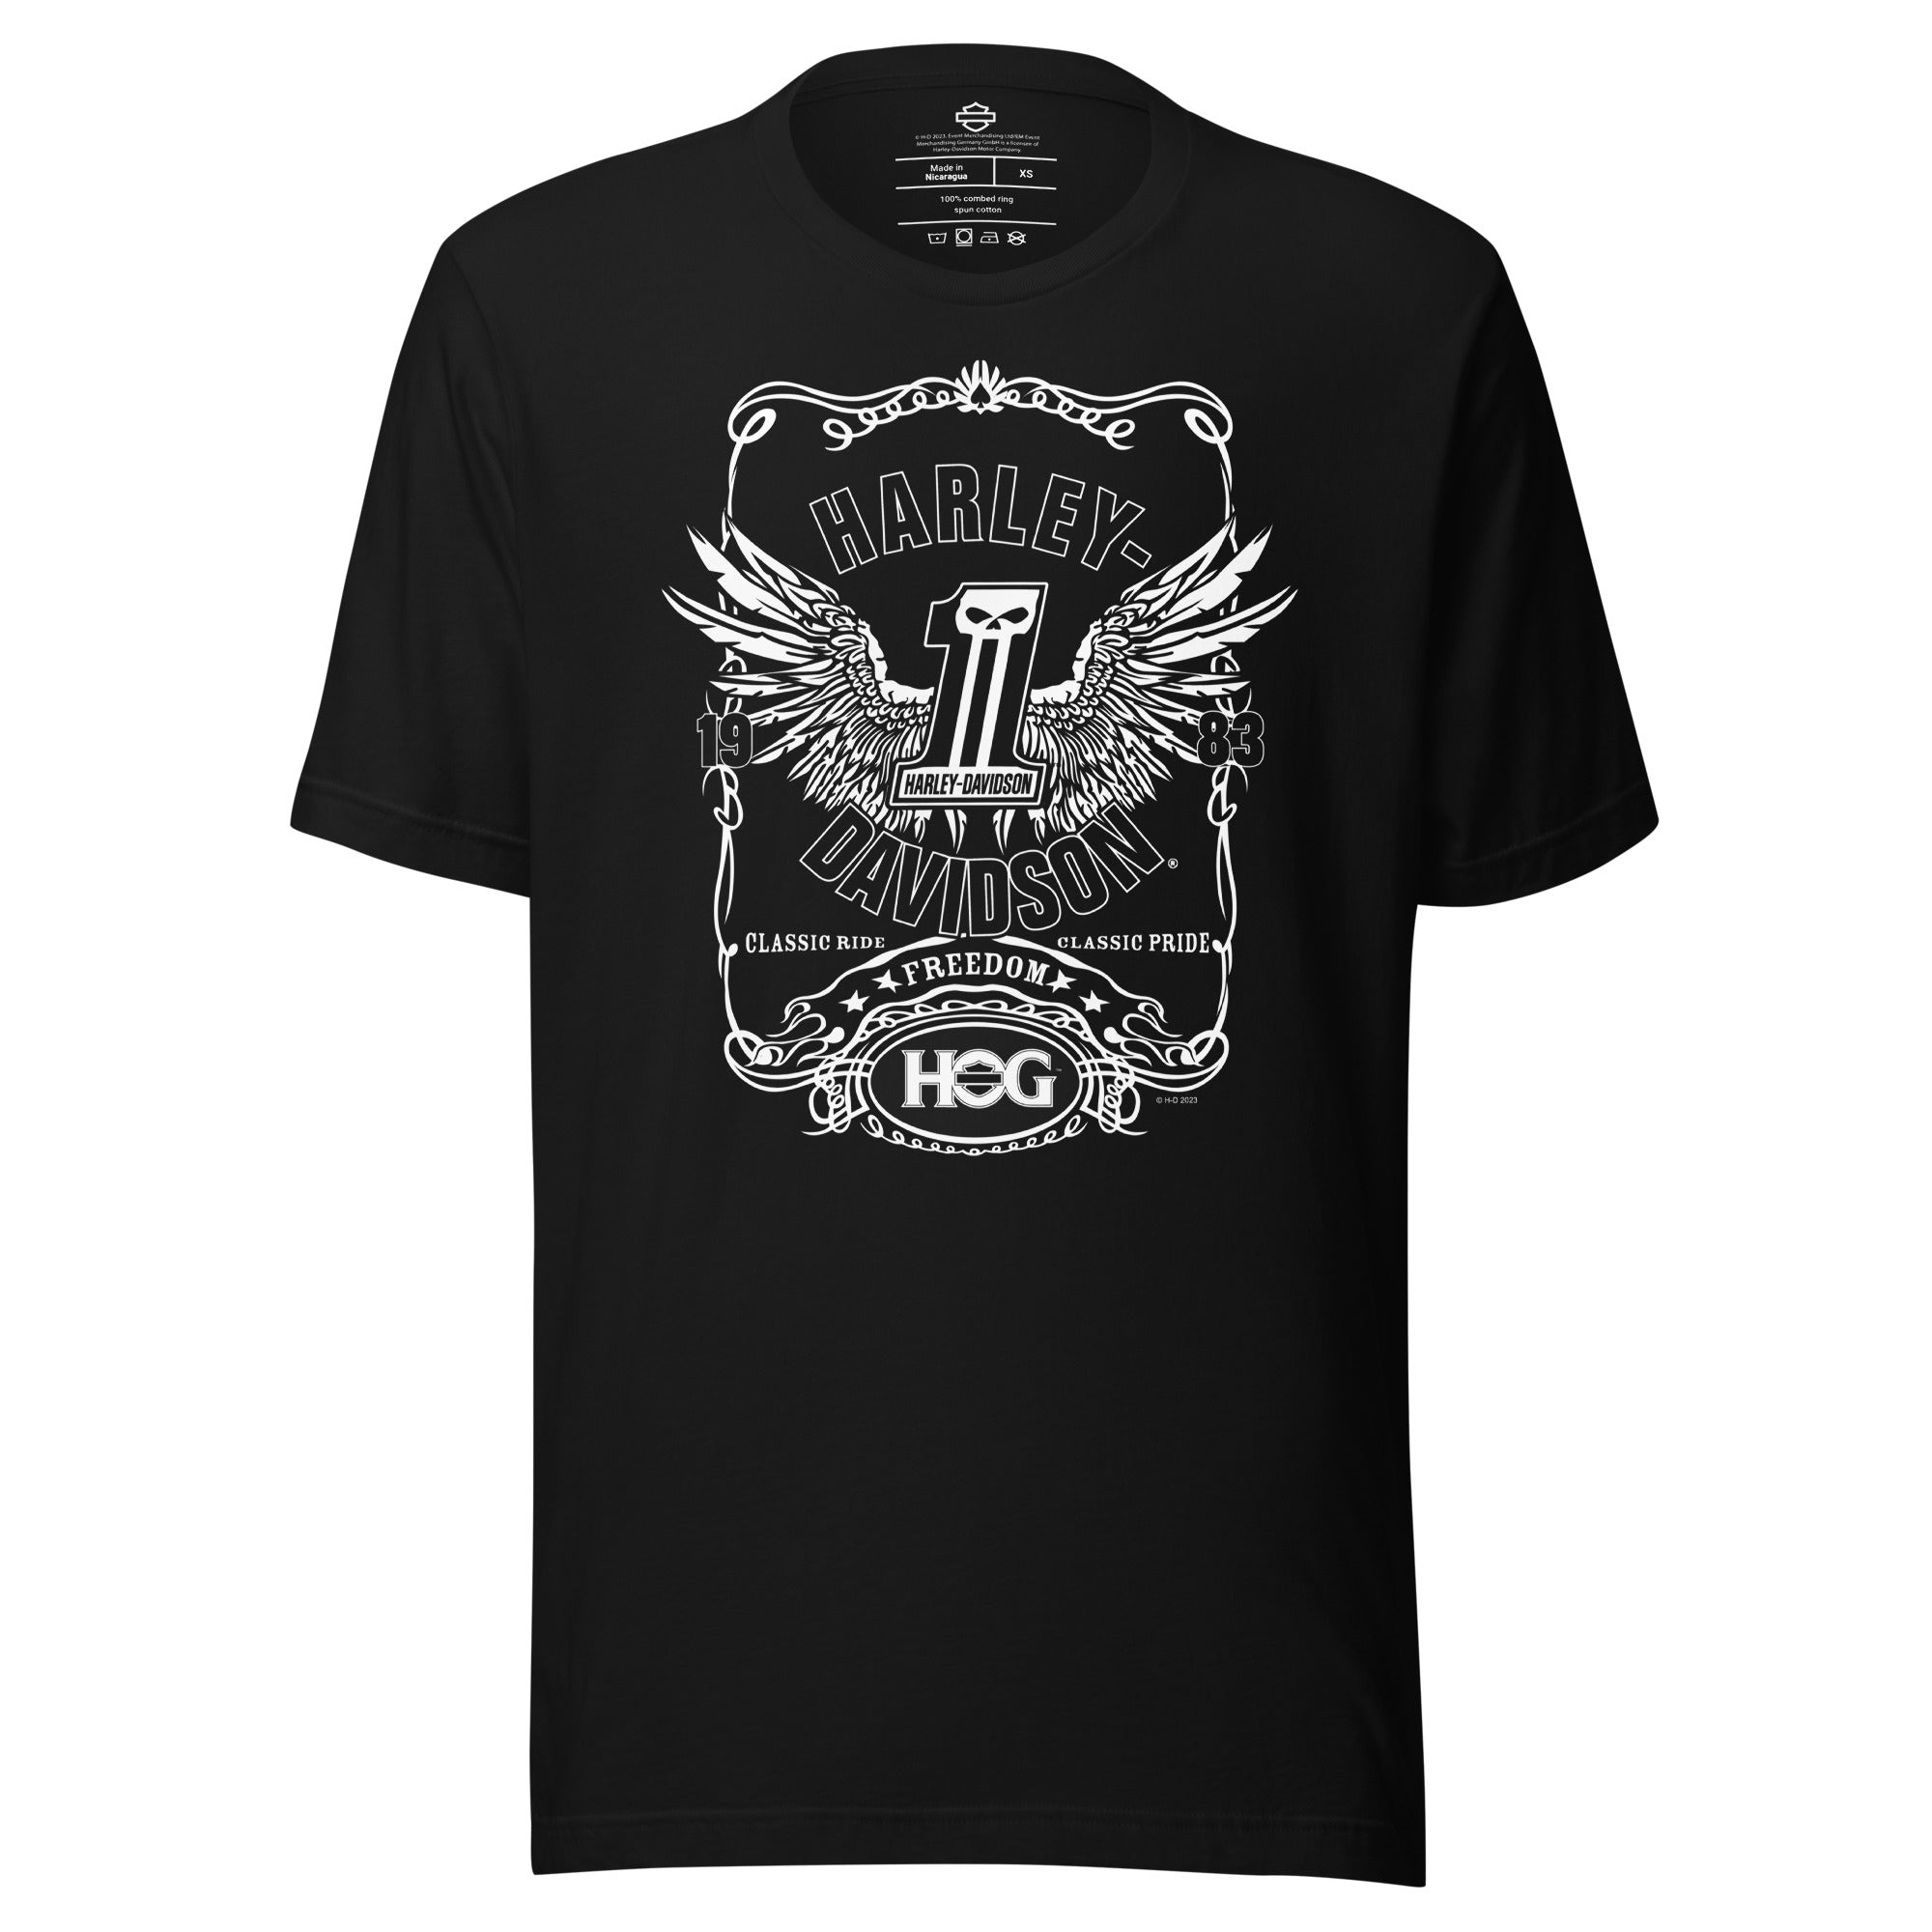 H.O.G. Freedom Unisex T-Shirt